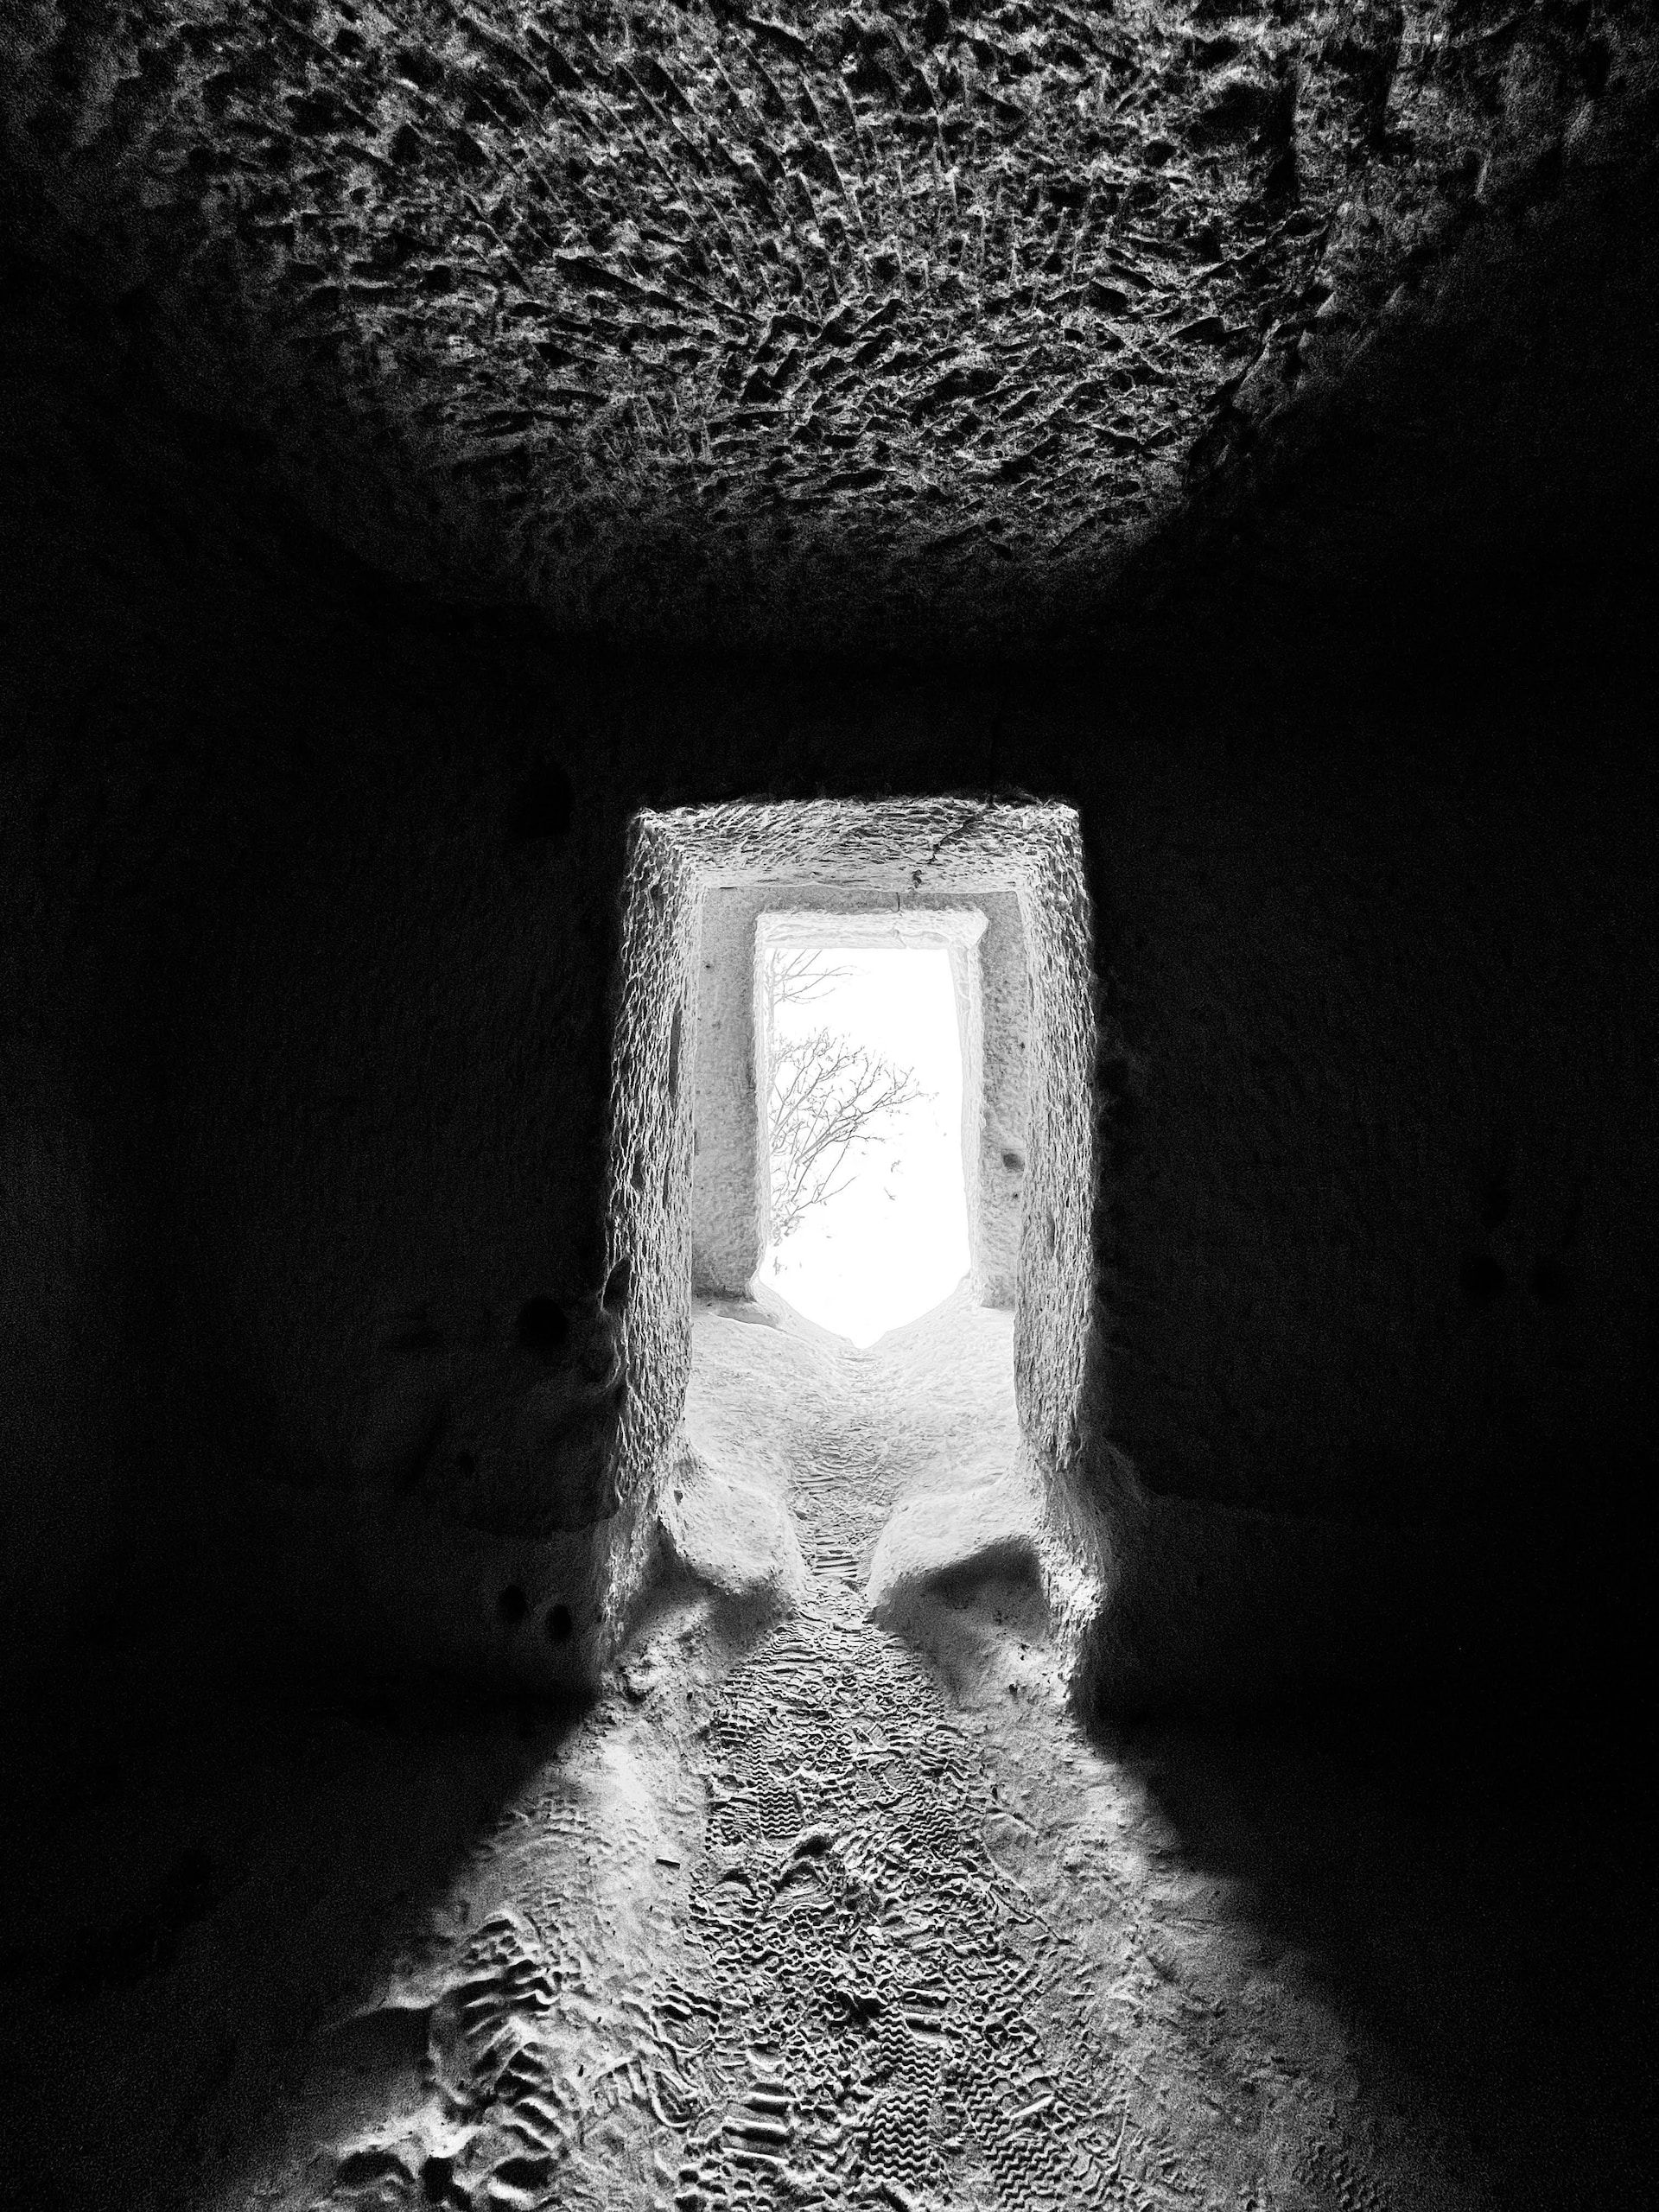 An open door in an underground tunnel